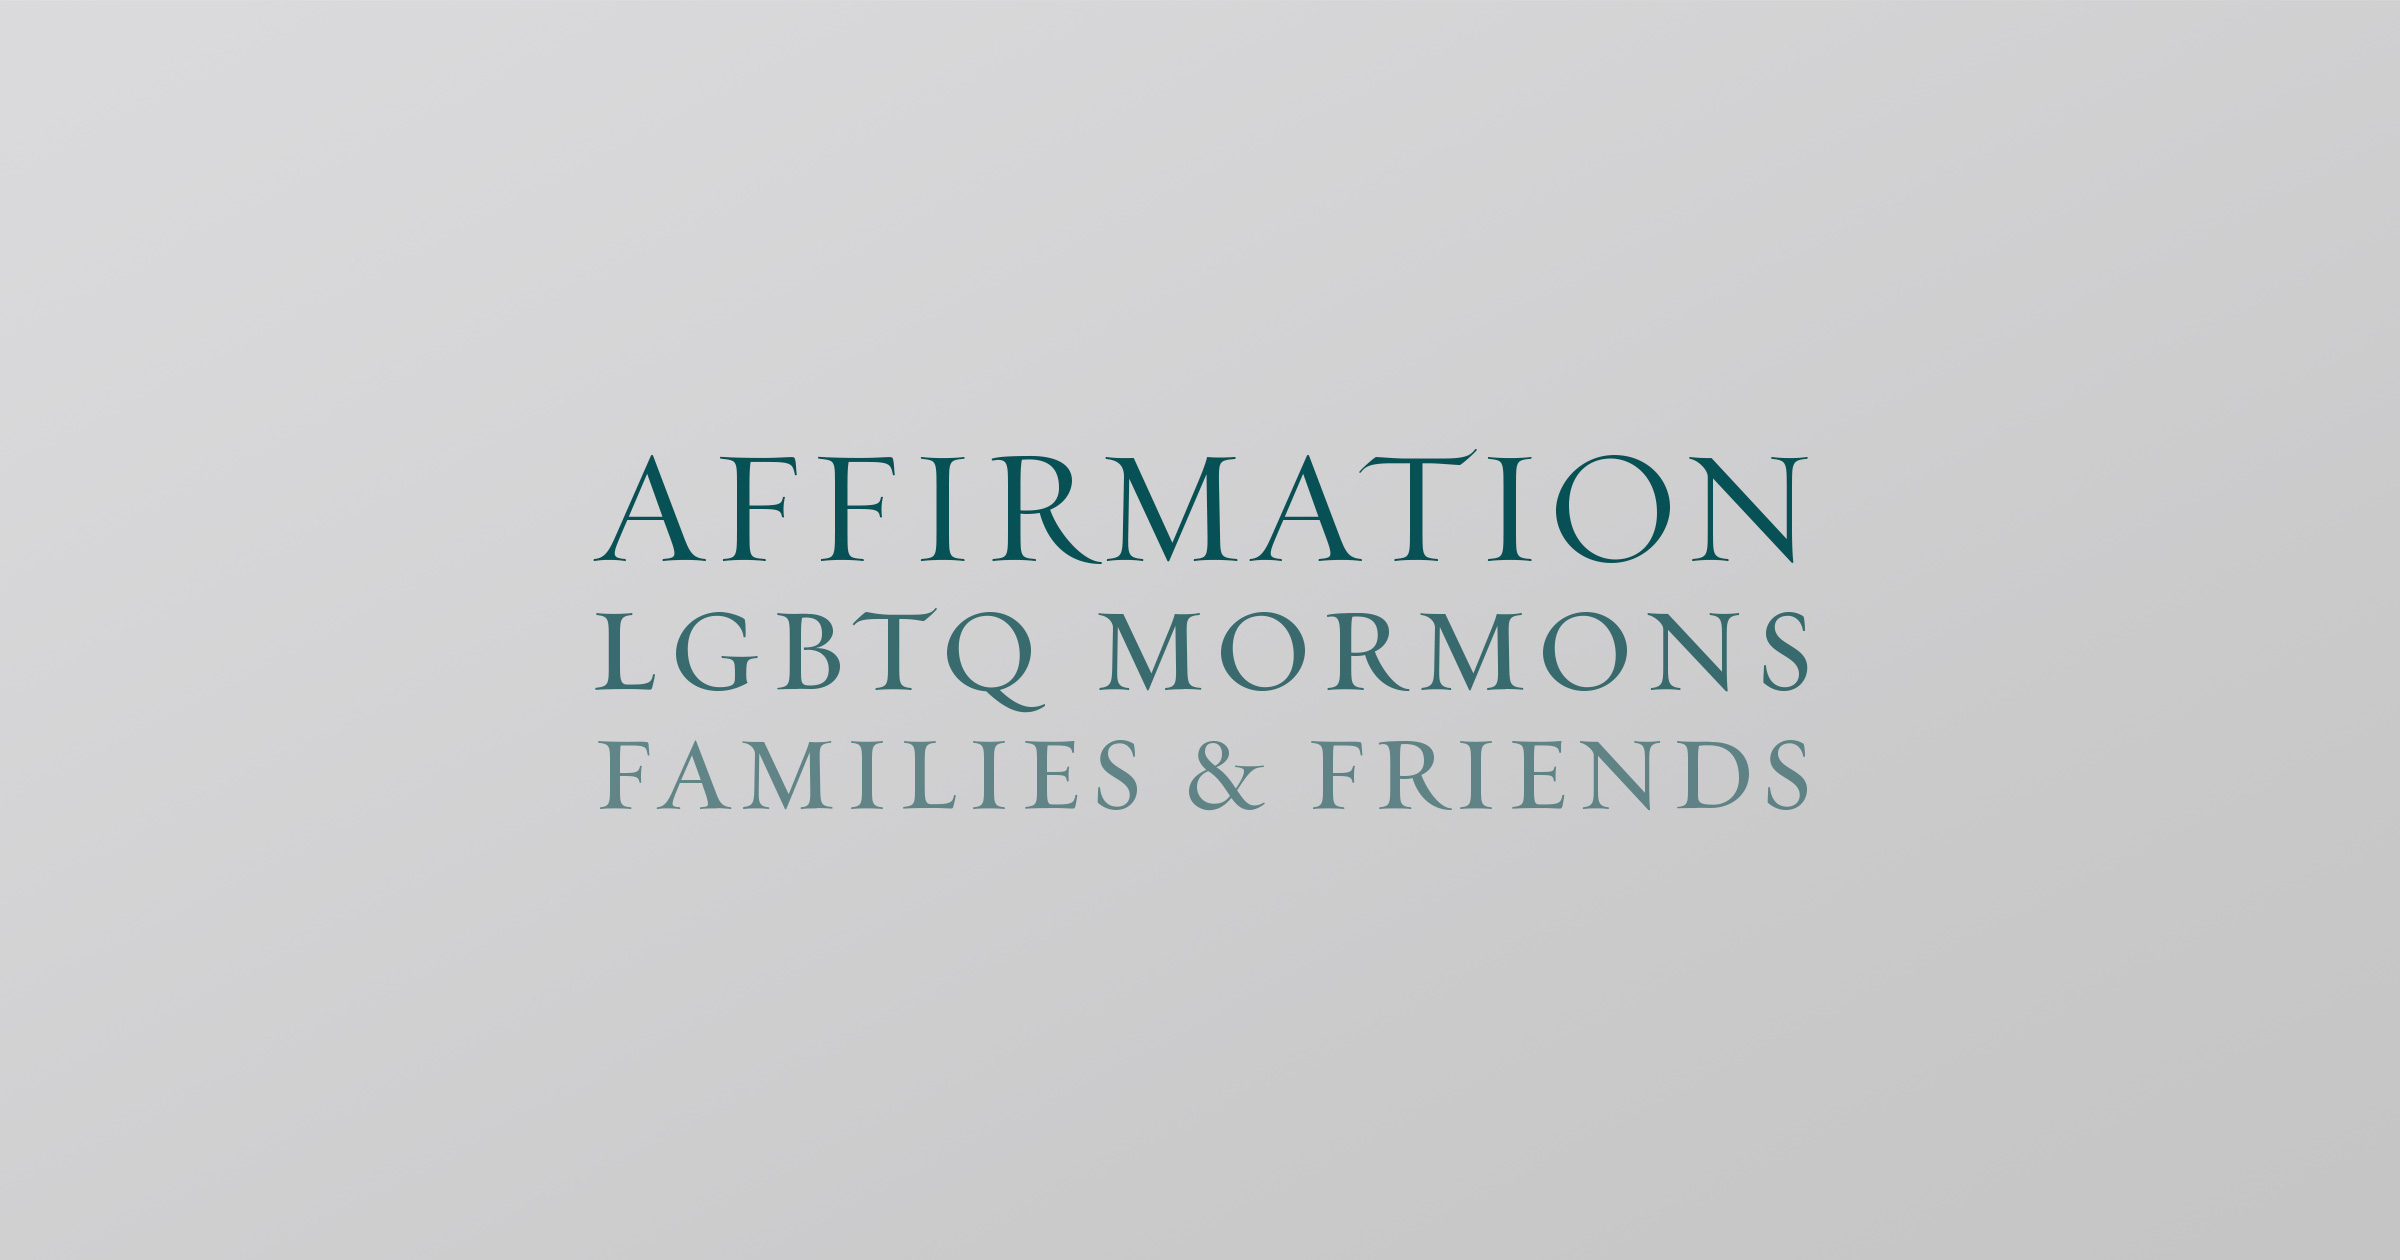 Afirmación: Mormones, familias y amigos LGBT